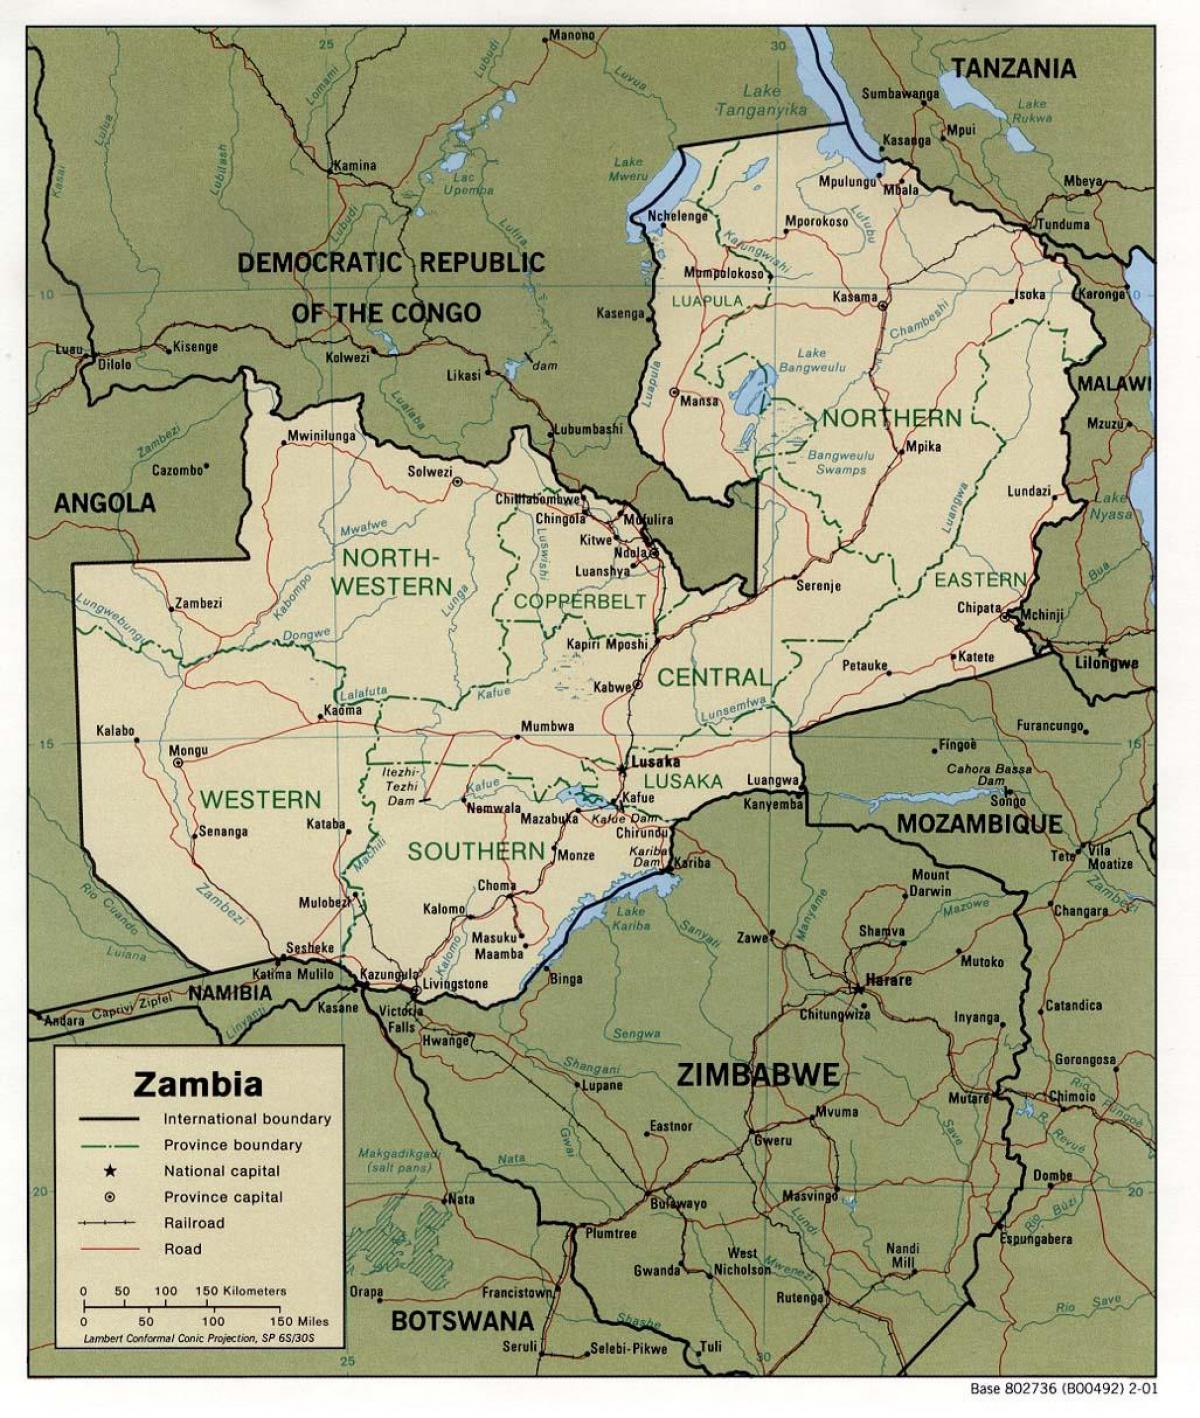 잠비아 신체적 특징 지도